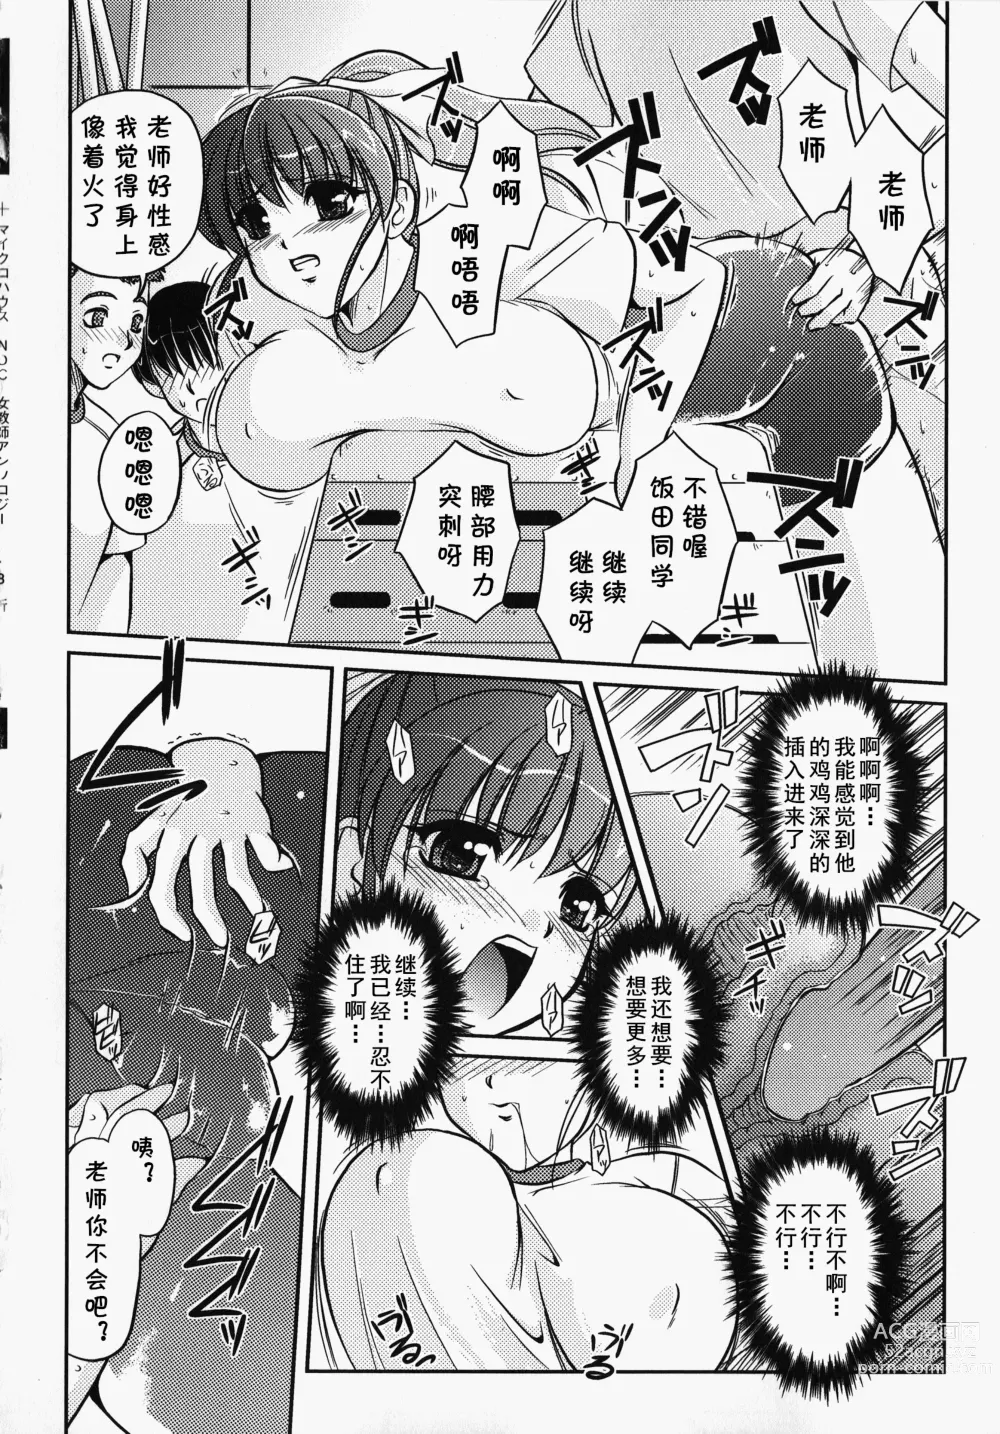 Page 9 of manga Bokura no Sensei  to  Himitsu  Jisshuu